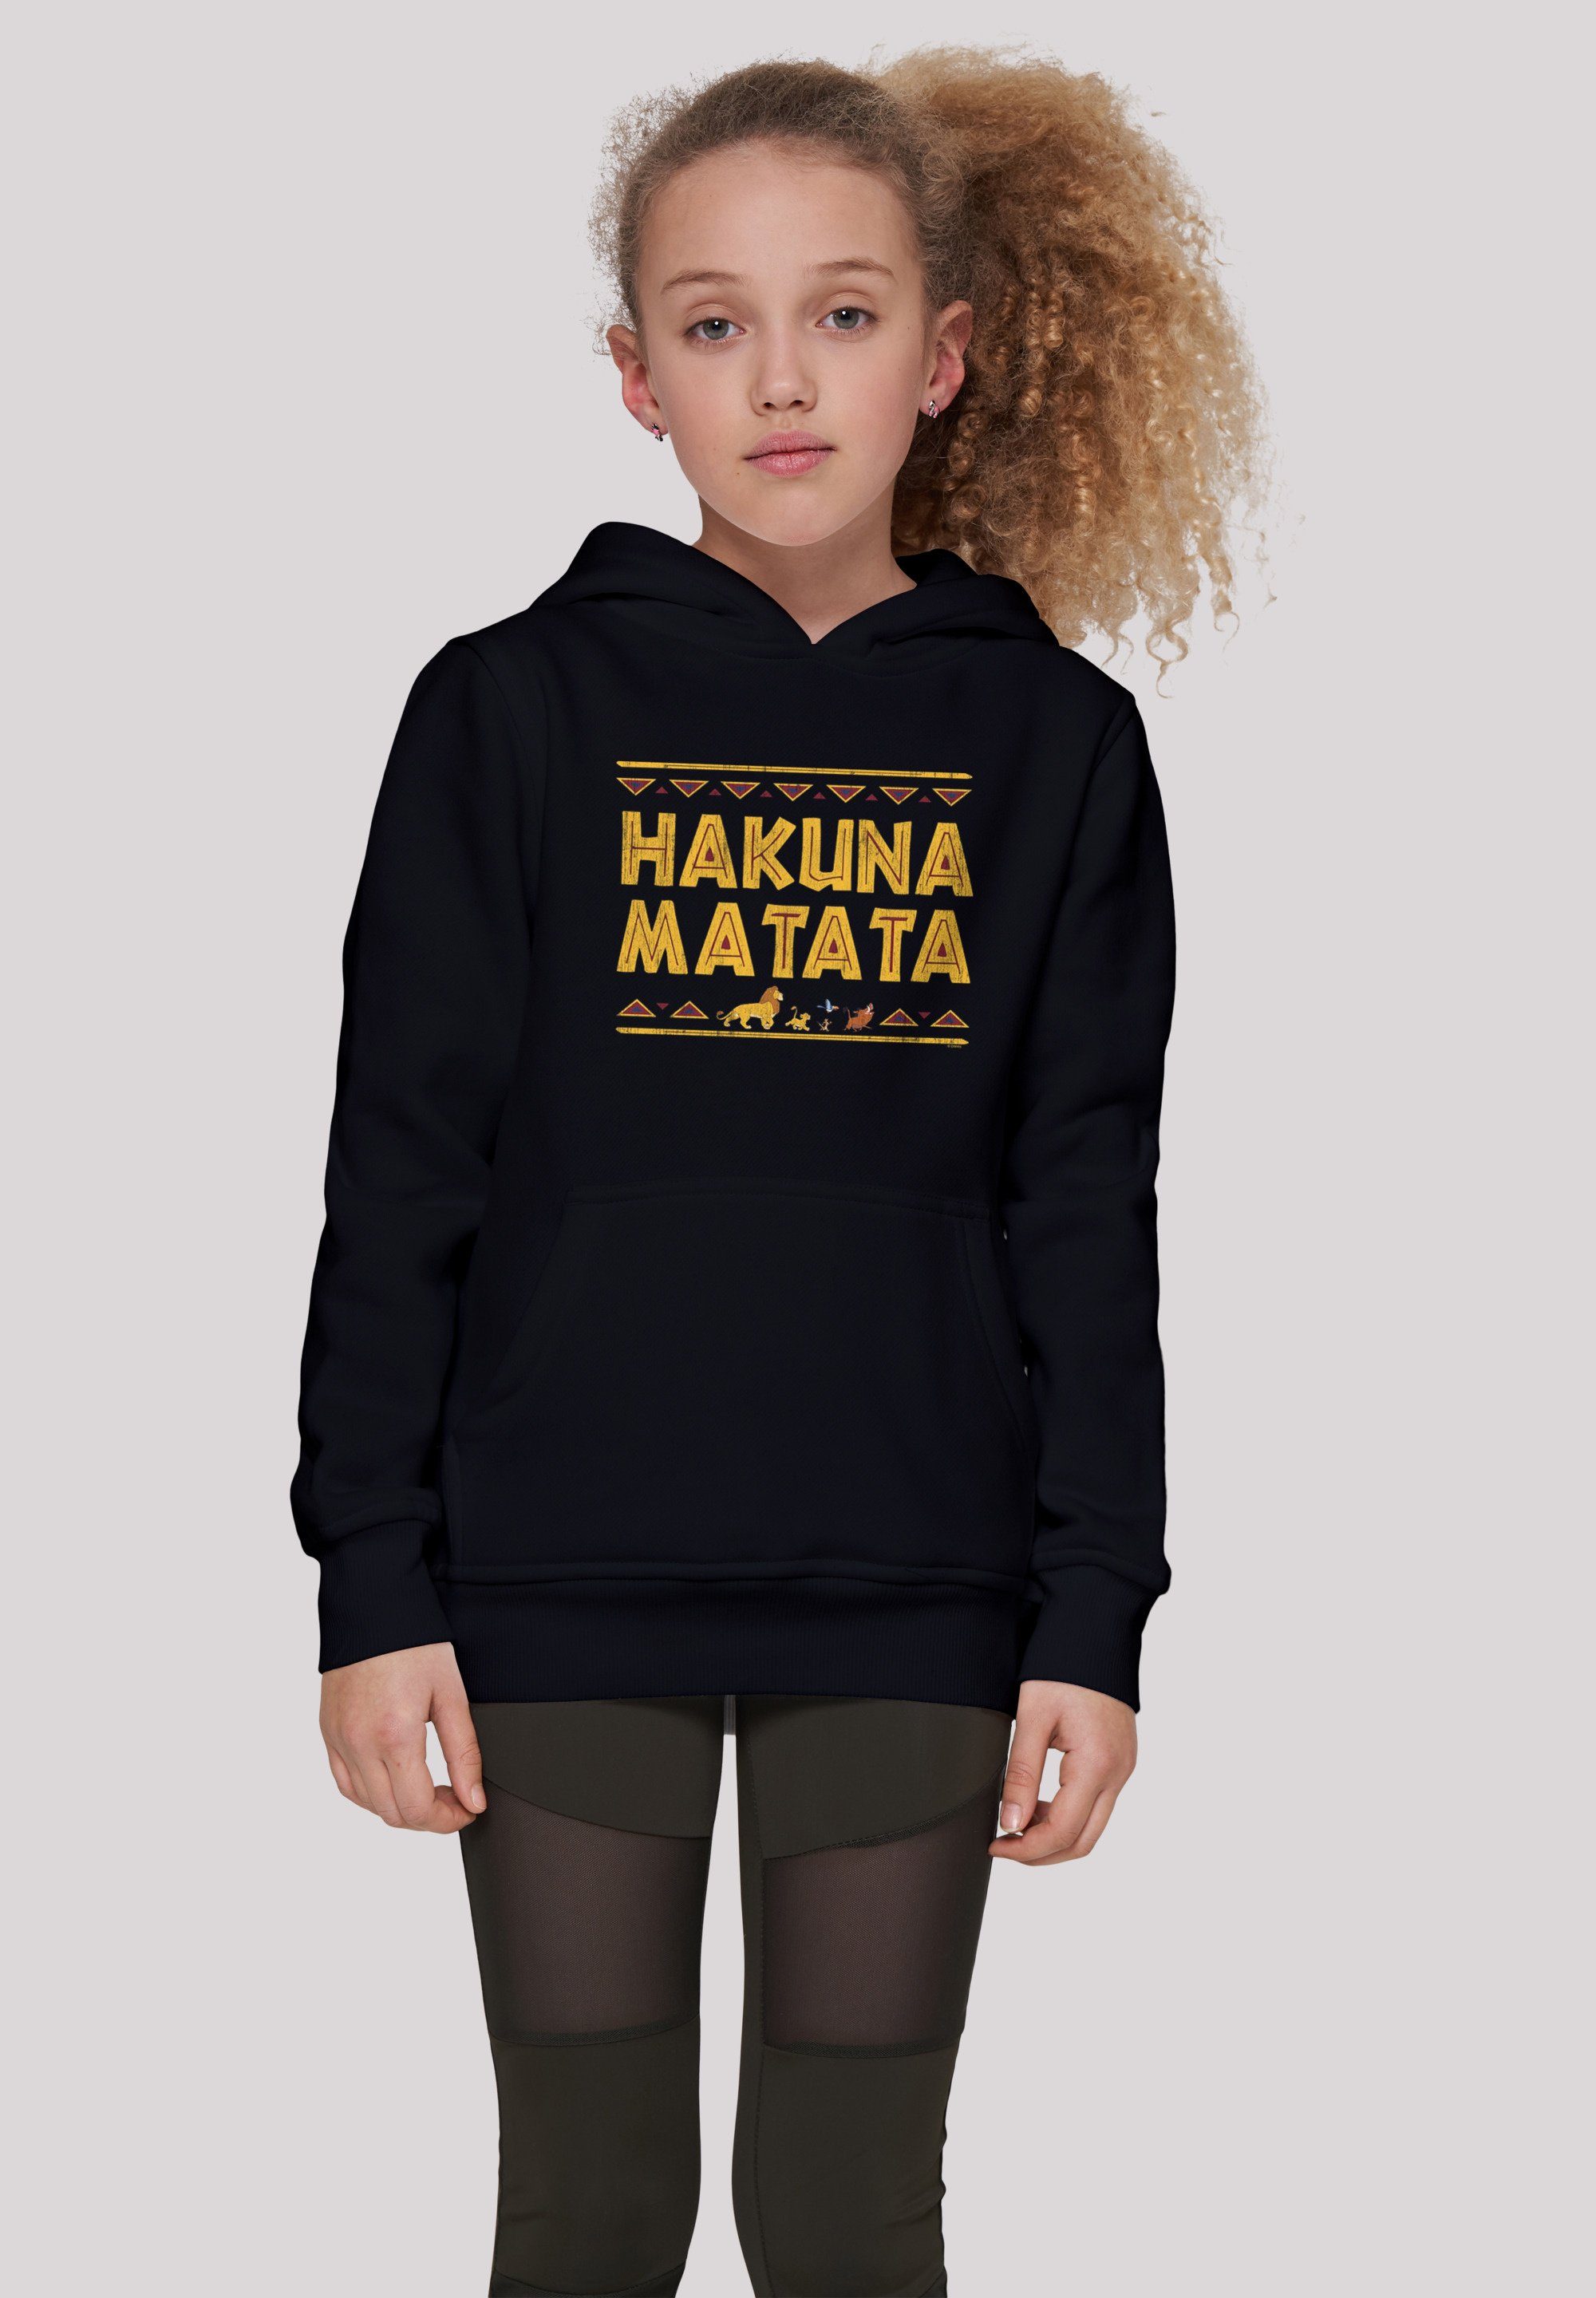 Hakuna Matata schwarz der Kinder,Premium Sweatshirt Unisex Merch,Jungen,Mädchen,Bedruckt Disney König Löwen F4NT4STIC